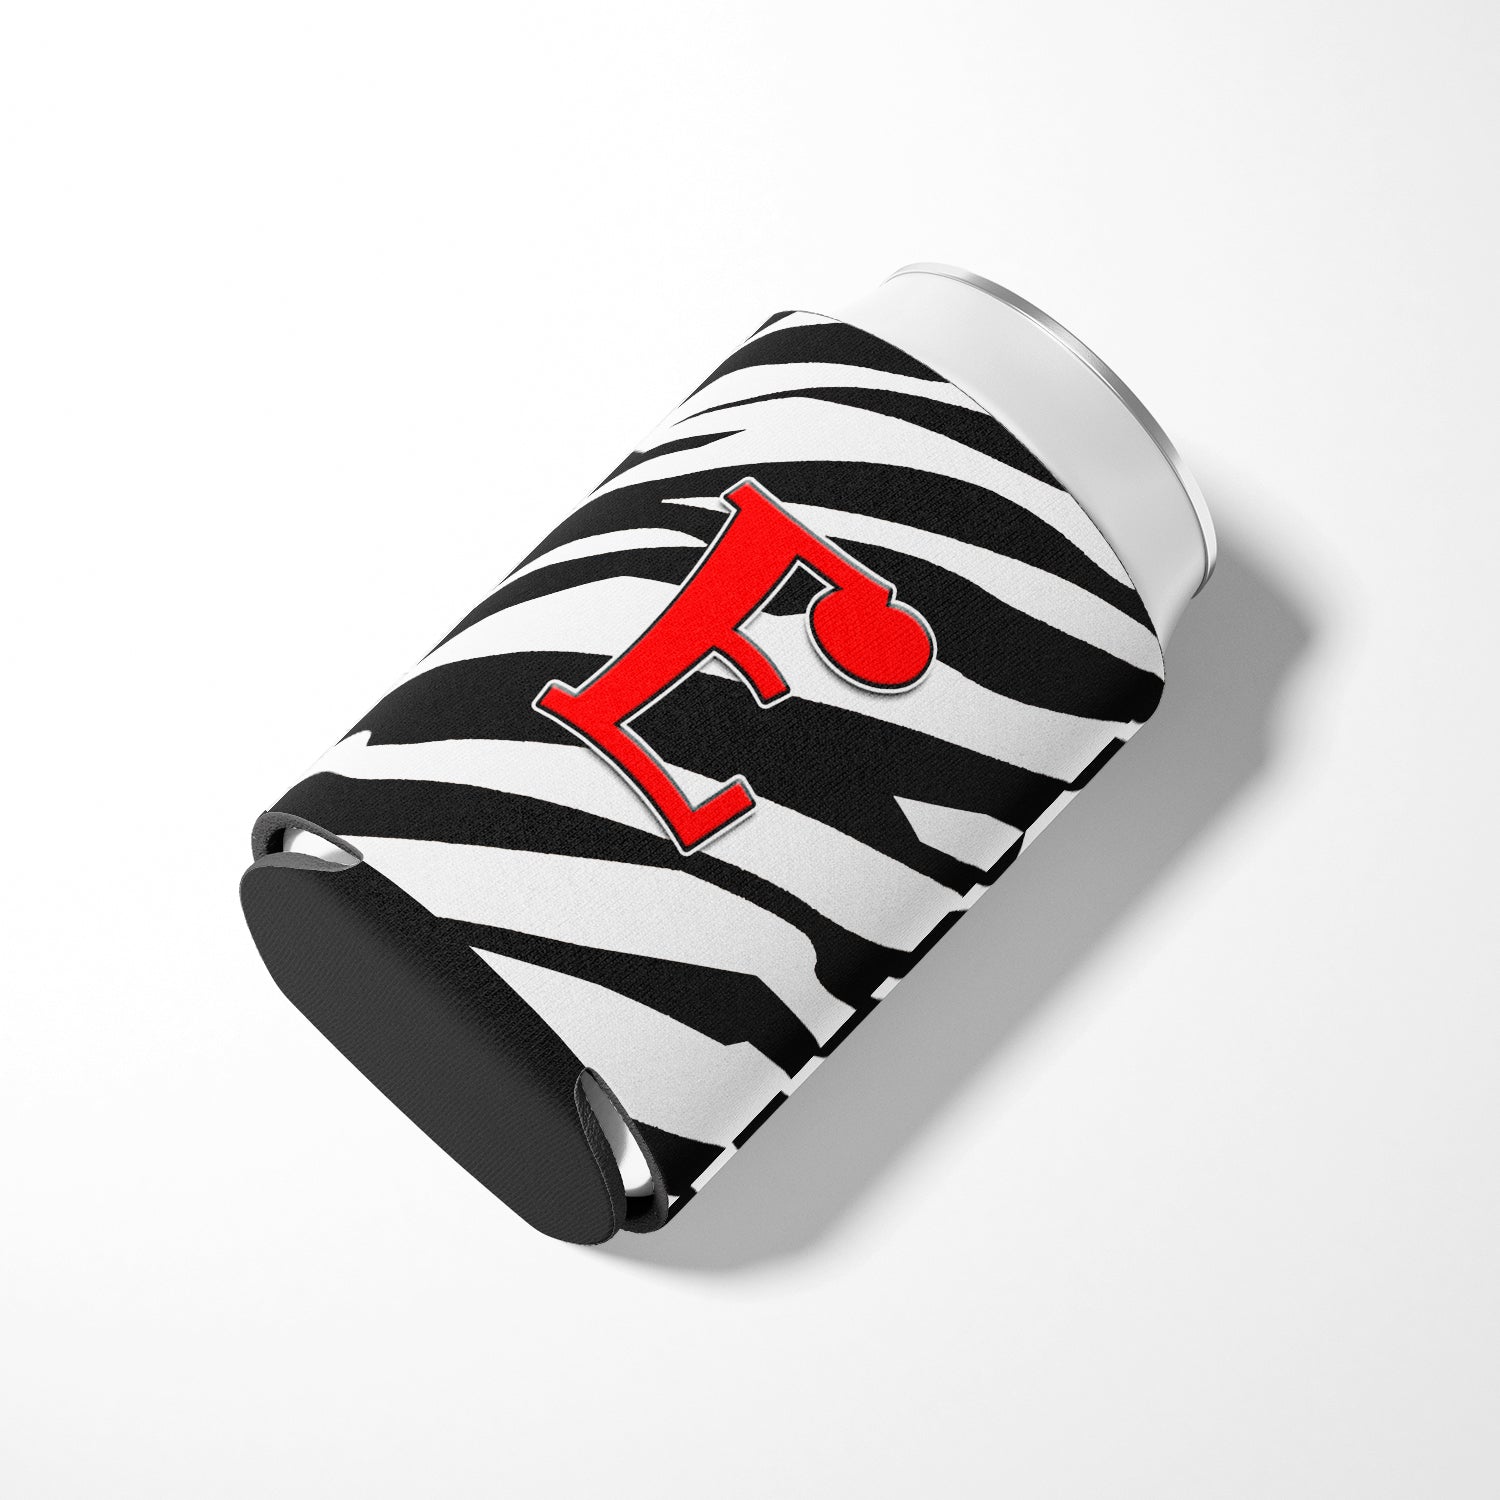 Letter E Initial Monogram - Zebra Red Can or Bottle Beverage Insulator Hugger.